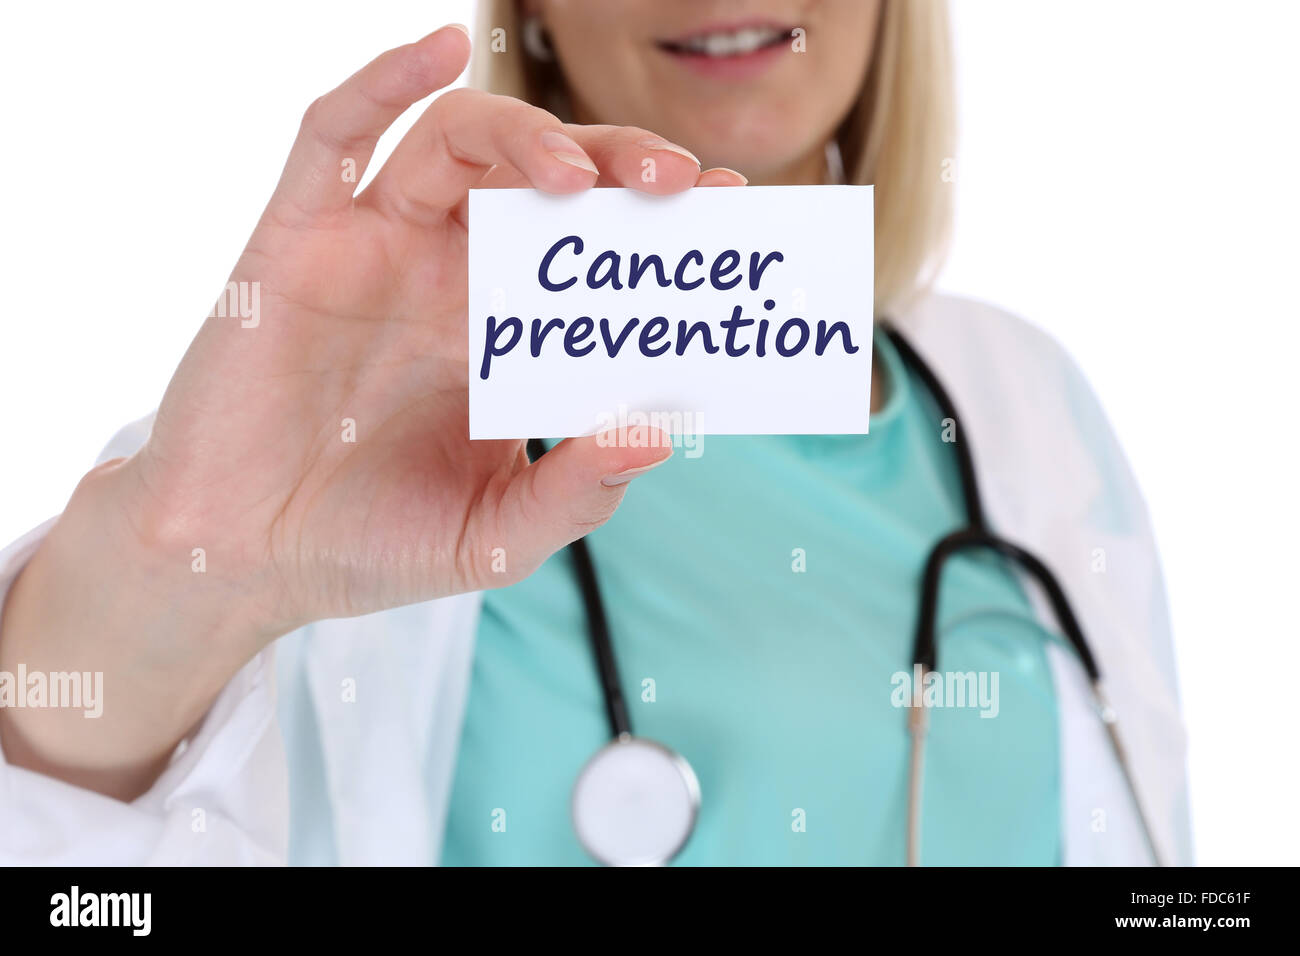 Krebsprävention screening-Check-Up Krankheit krank Krankheit gesund Gesundheit Krankenschwester Arzt mit Schild Stockfoto